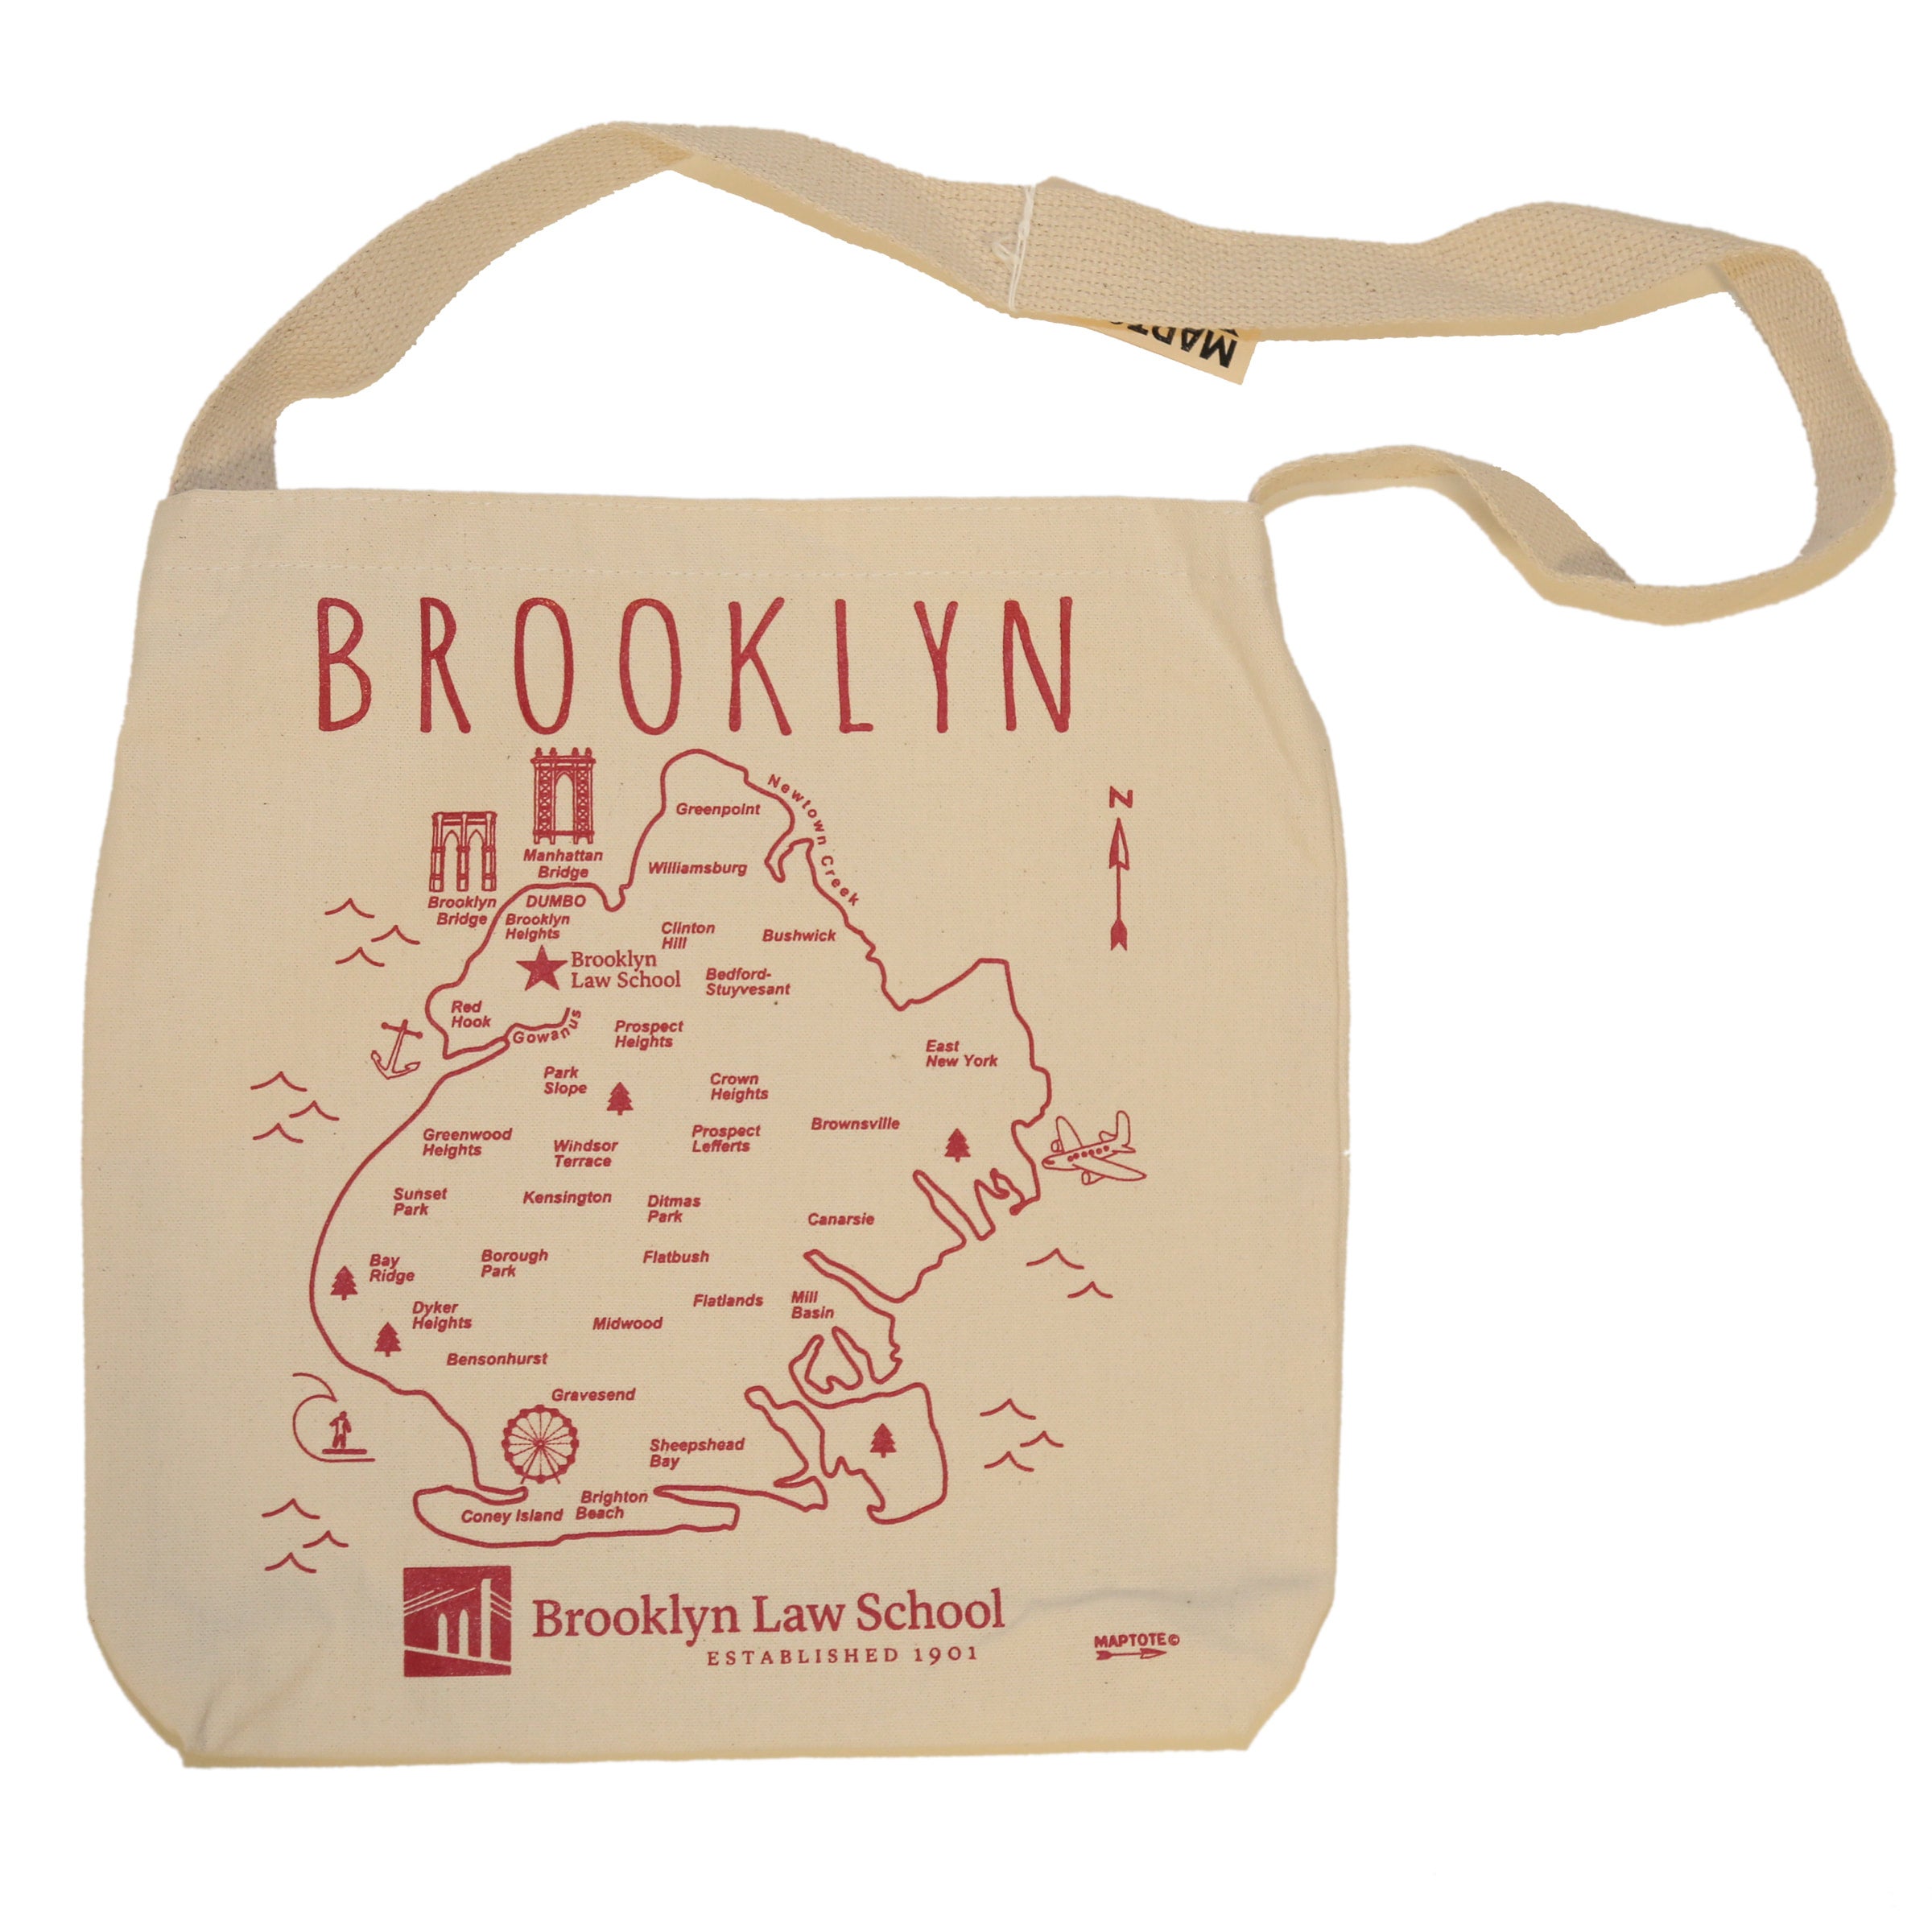 Brooklyn Tote Bag